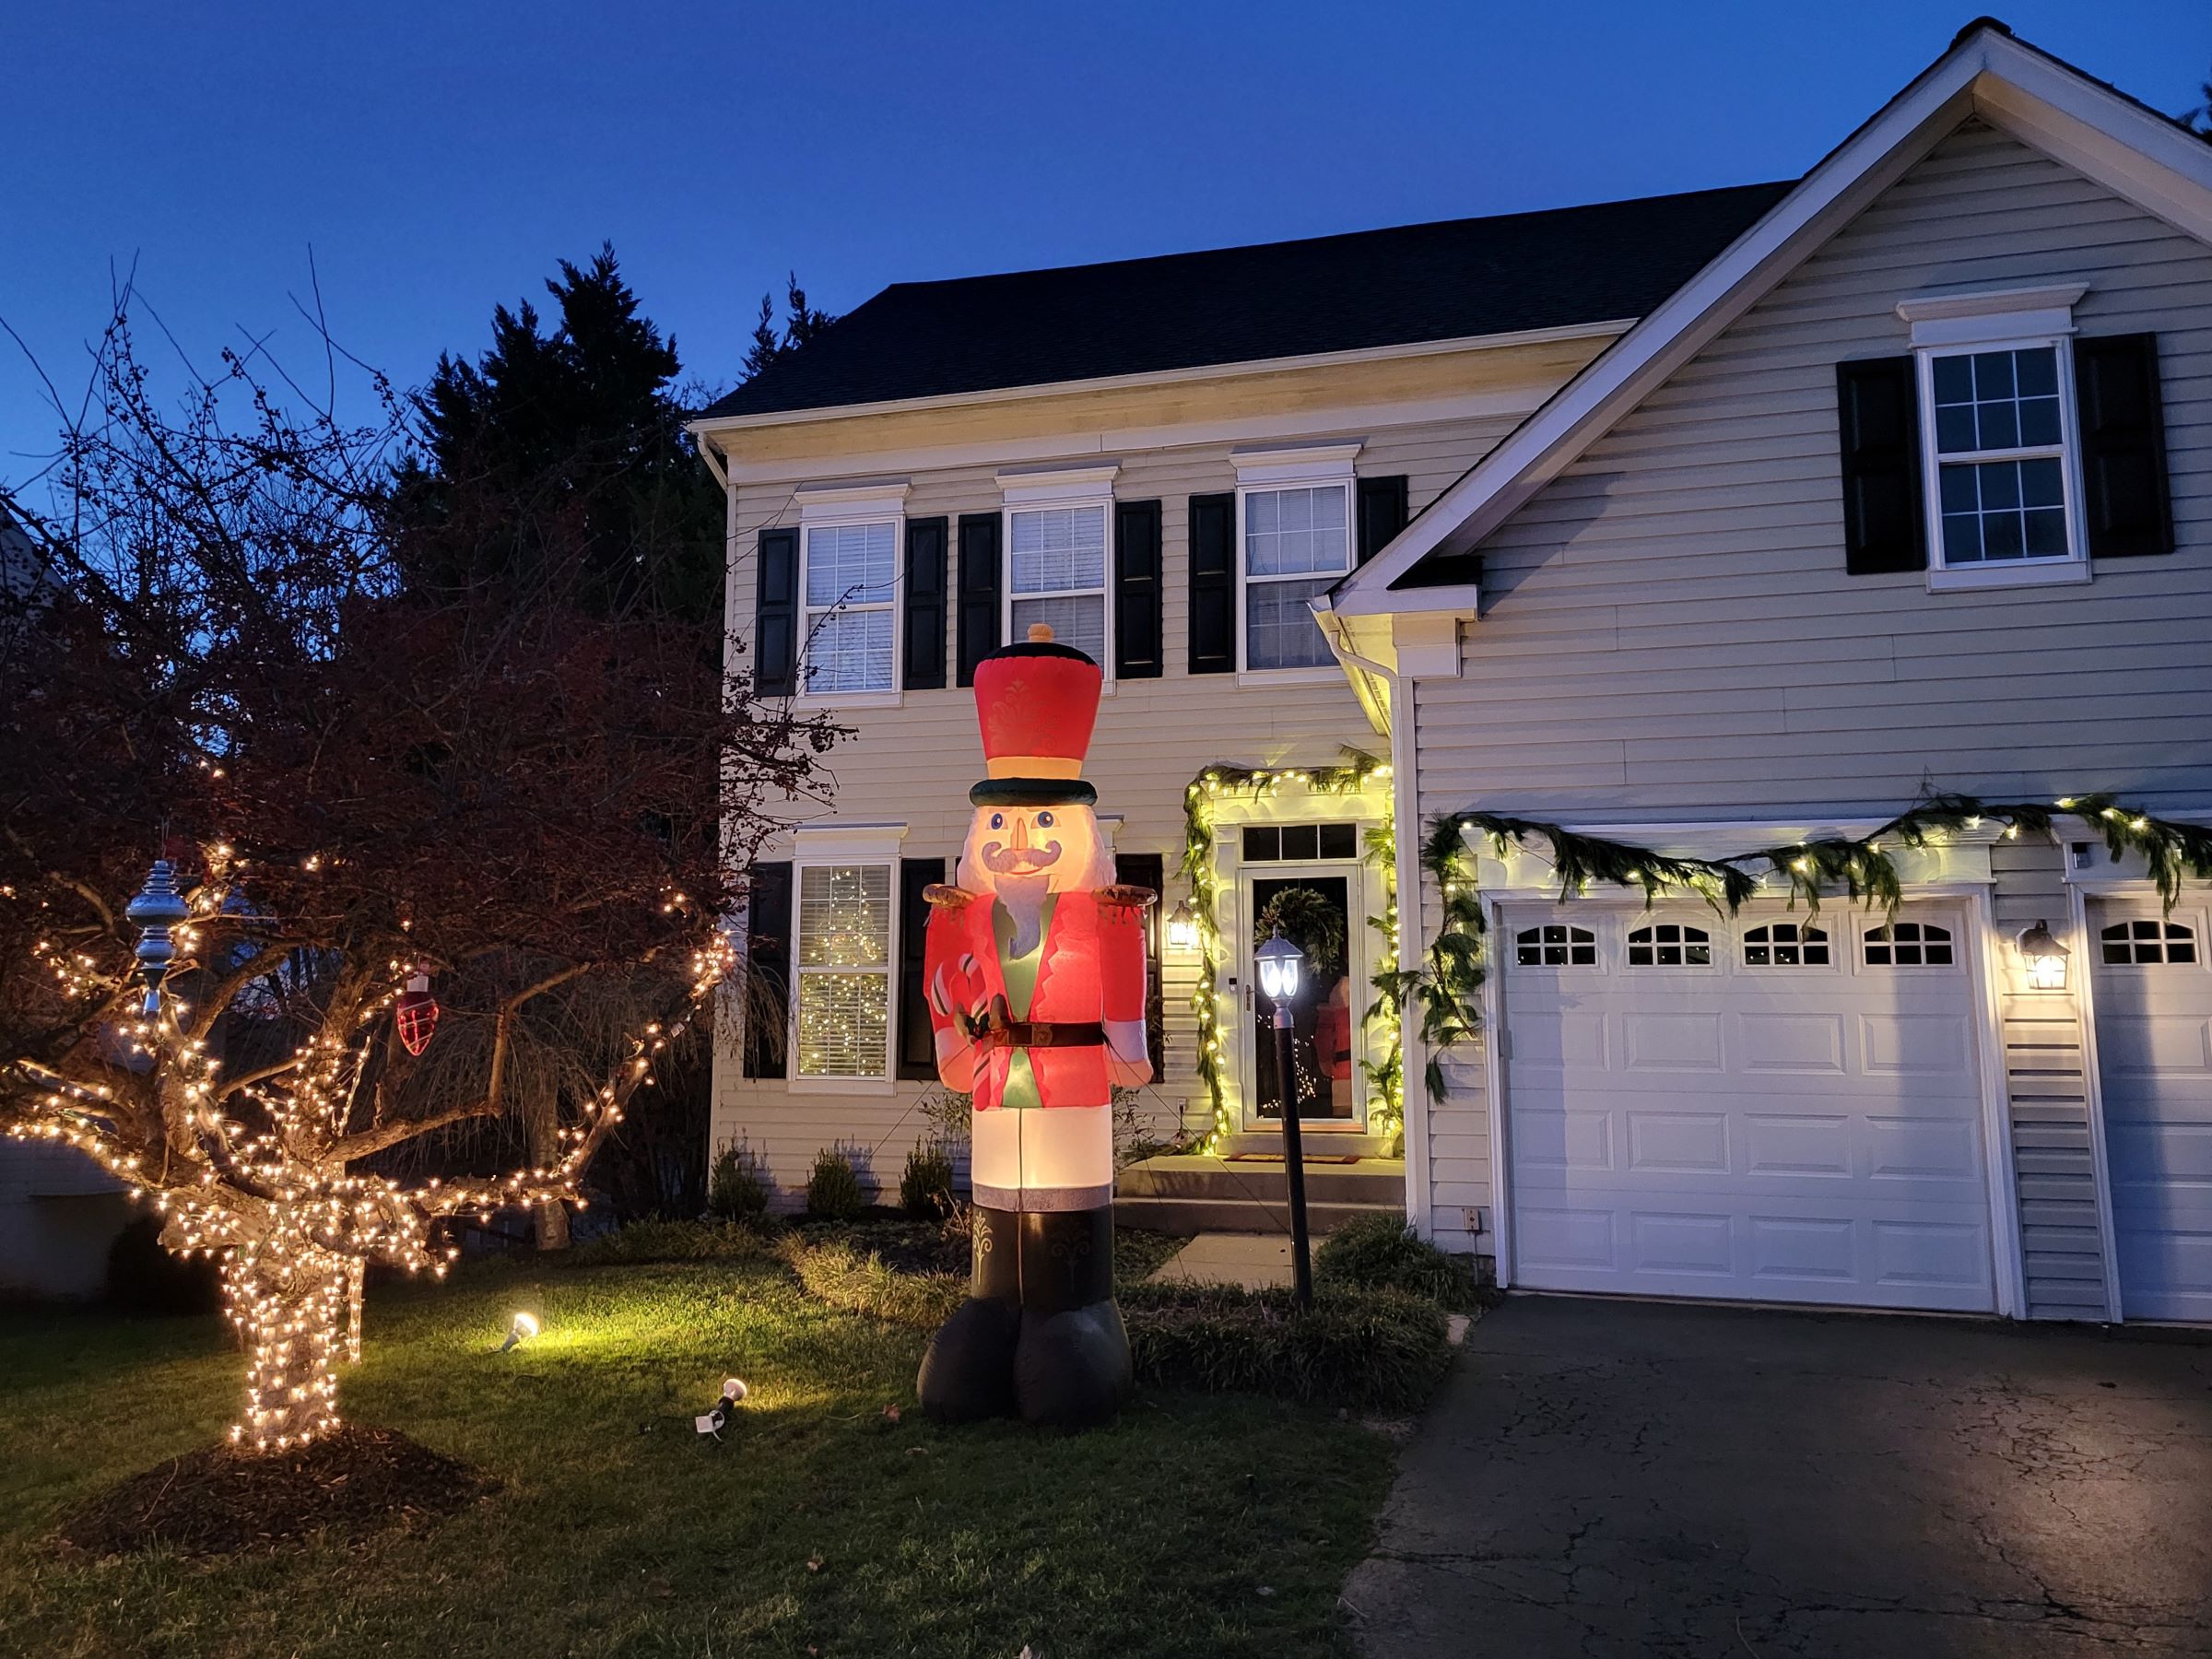 우리집 크리스마스 트리(Christmas Tree)들과 외부 조명, 그리고 동네 다른 집들의 연말장식 모습